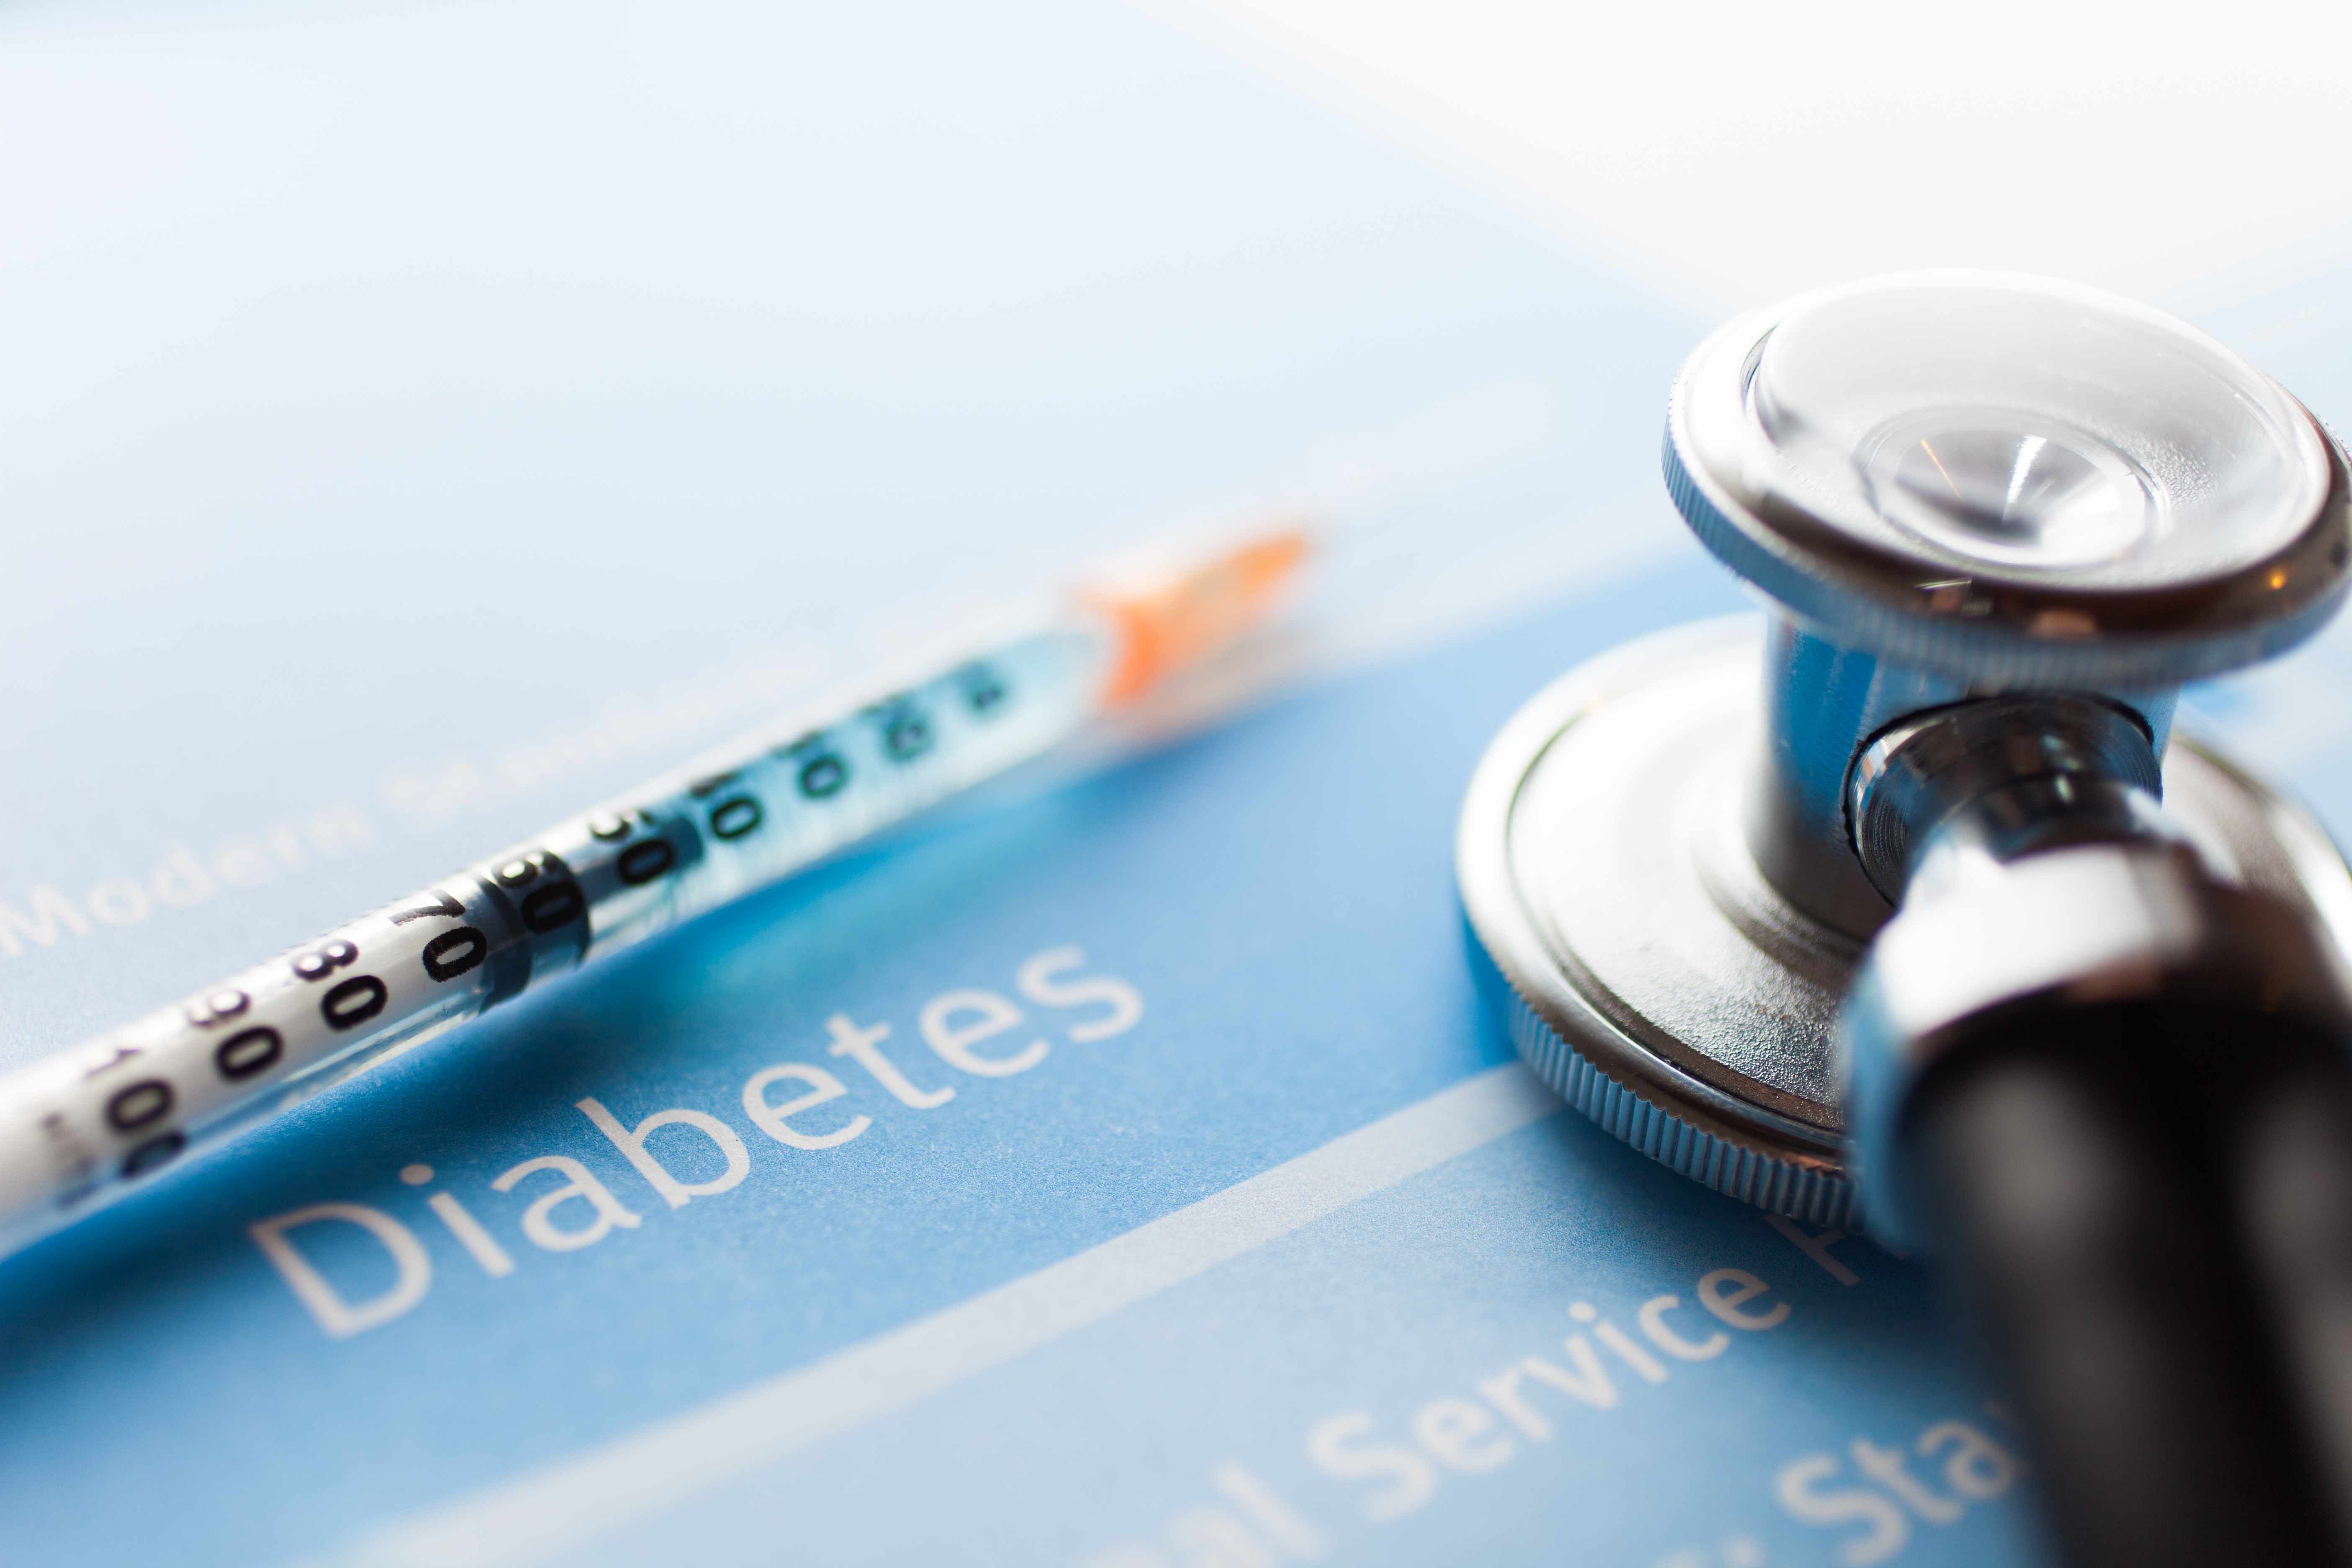 Free Insulin Injections | सरकारी अस्पतालों में मरीजों को मुफ्त मिलेंगे इंसुलिन इंजेक्शन, स्वास्थ्य मंत्री ने की घोषणा